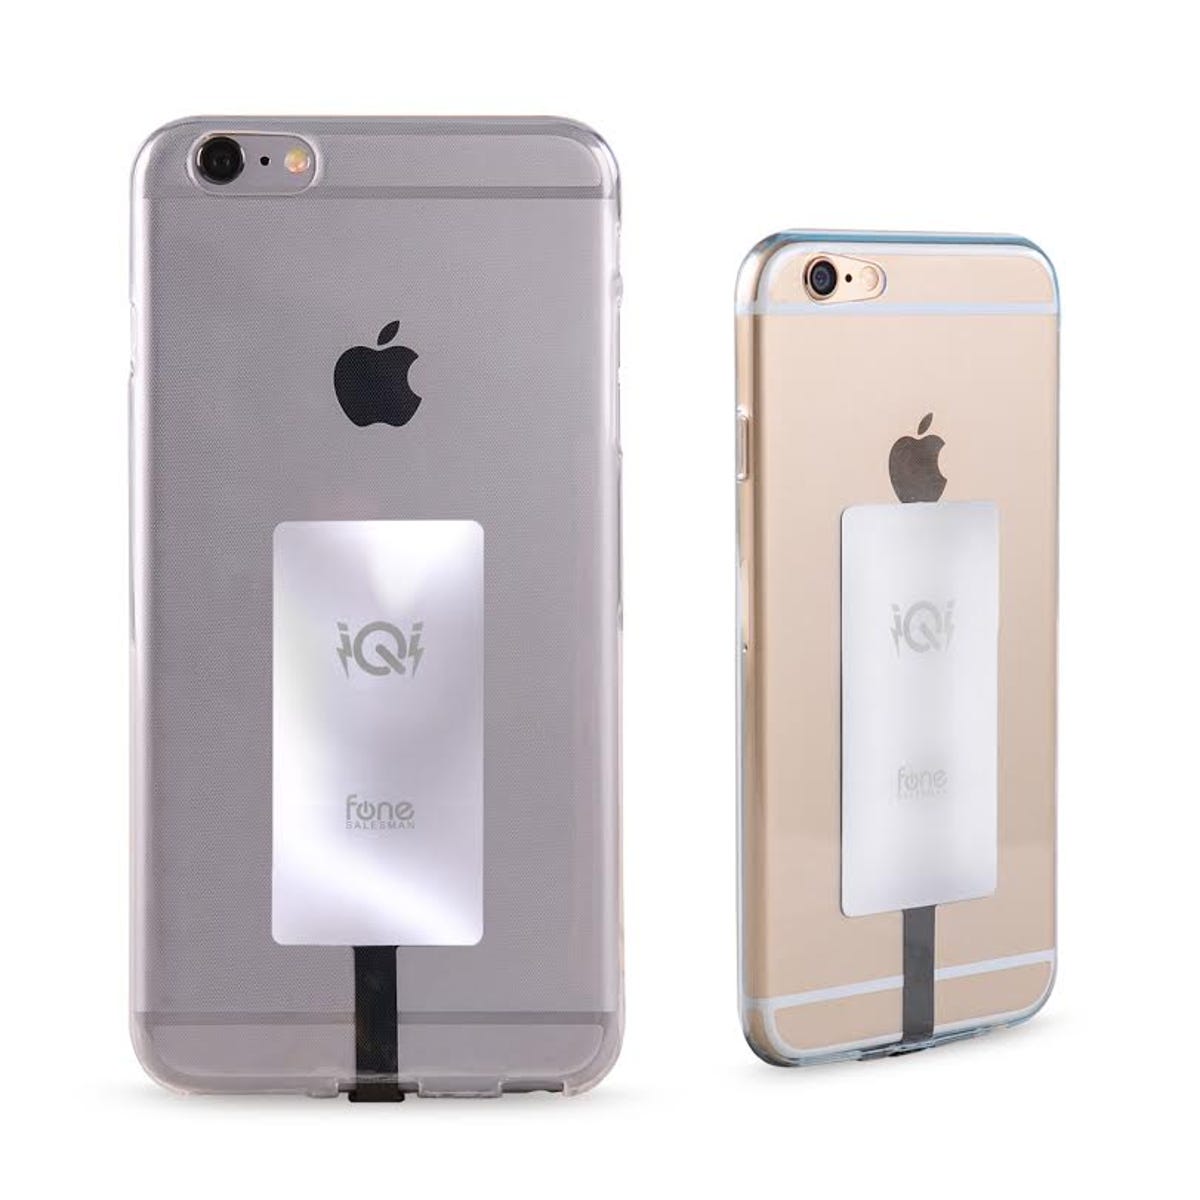 iQi Mobile iPhone